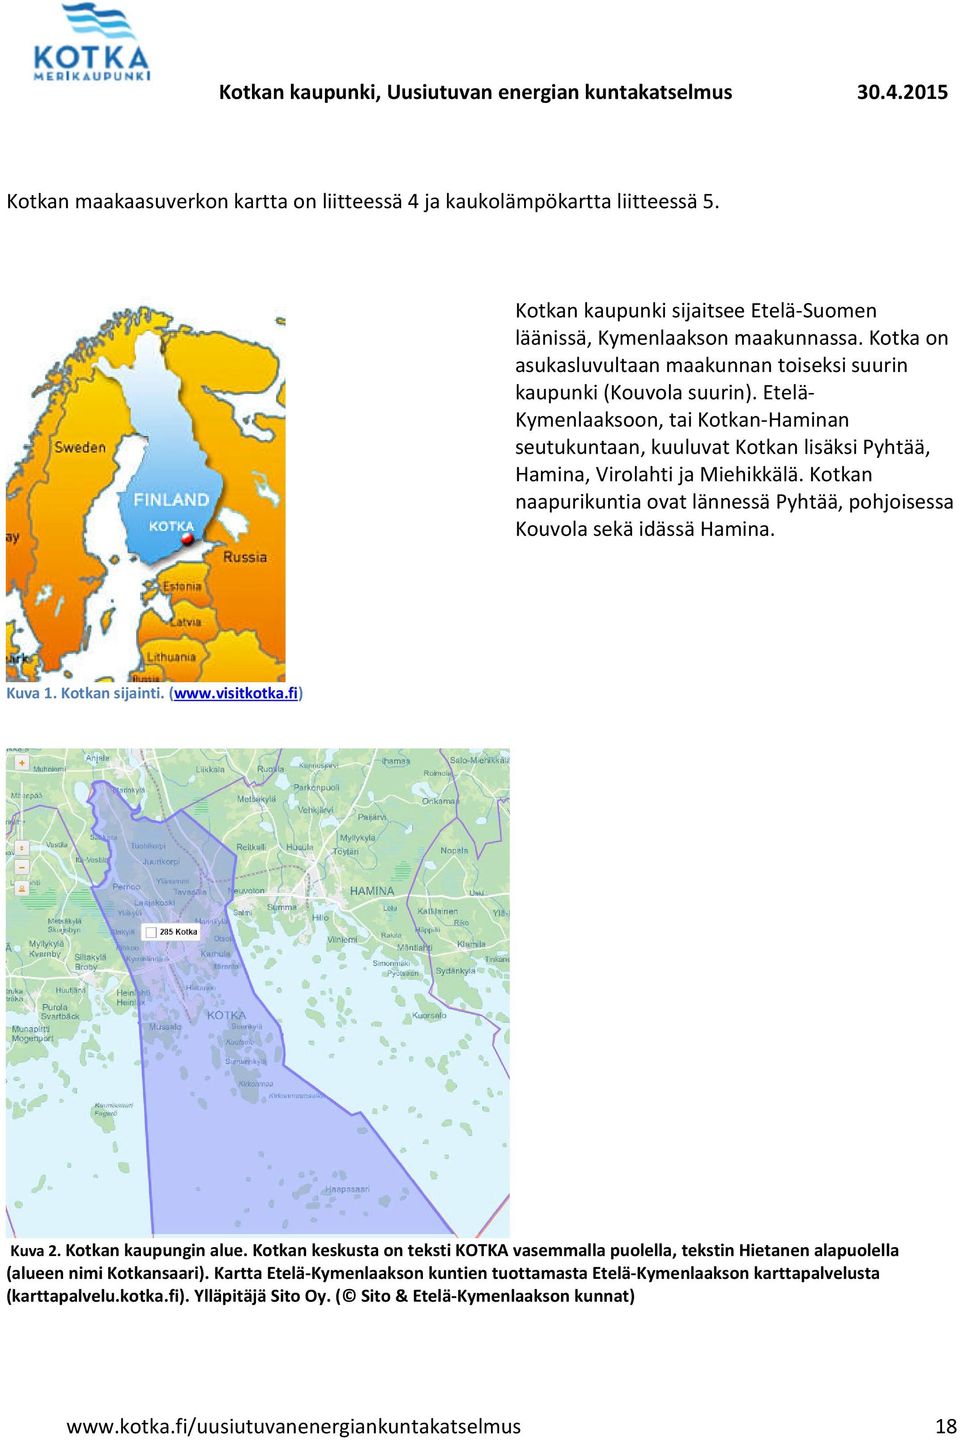 Kotkan naapurikuntia ovat lännessä Pyhtää, pohjoisessa Kouvola sekä idässä Hamina. Kuva 1. Kotkan sijainti. (www.visitkotka.fi) Kuva 2. Kotkan kaupungin alue.